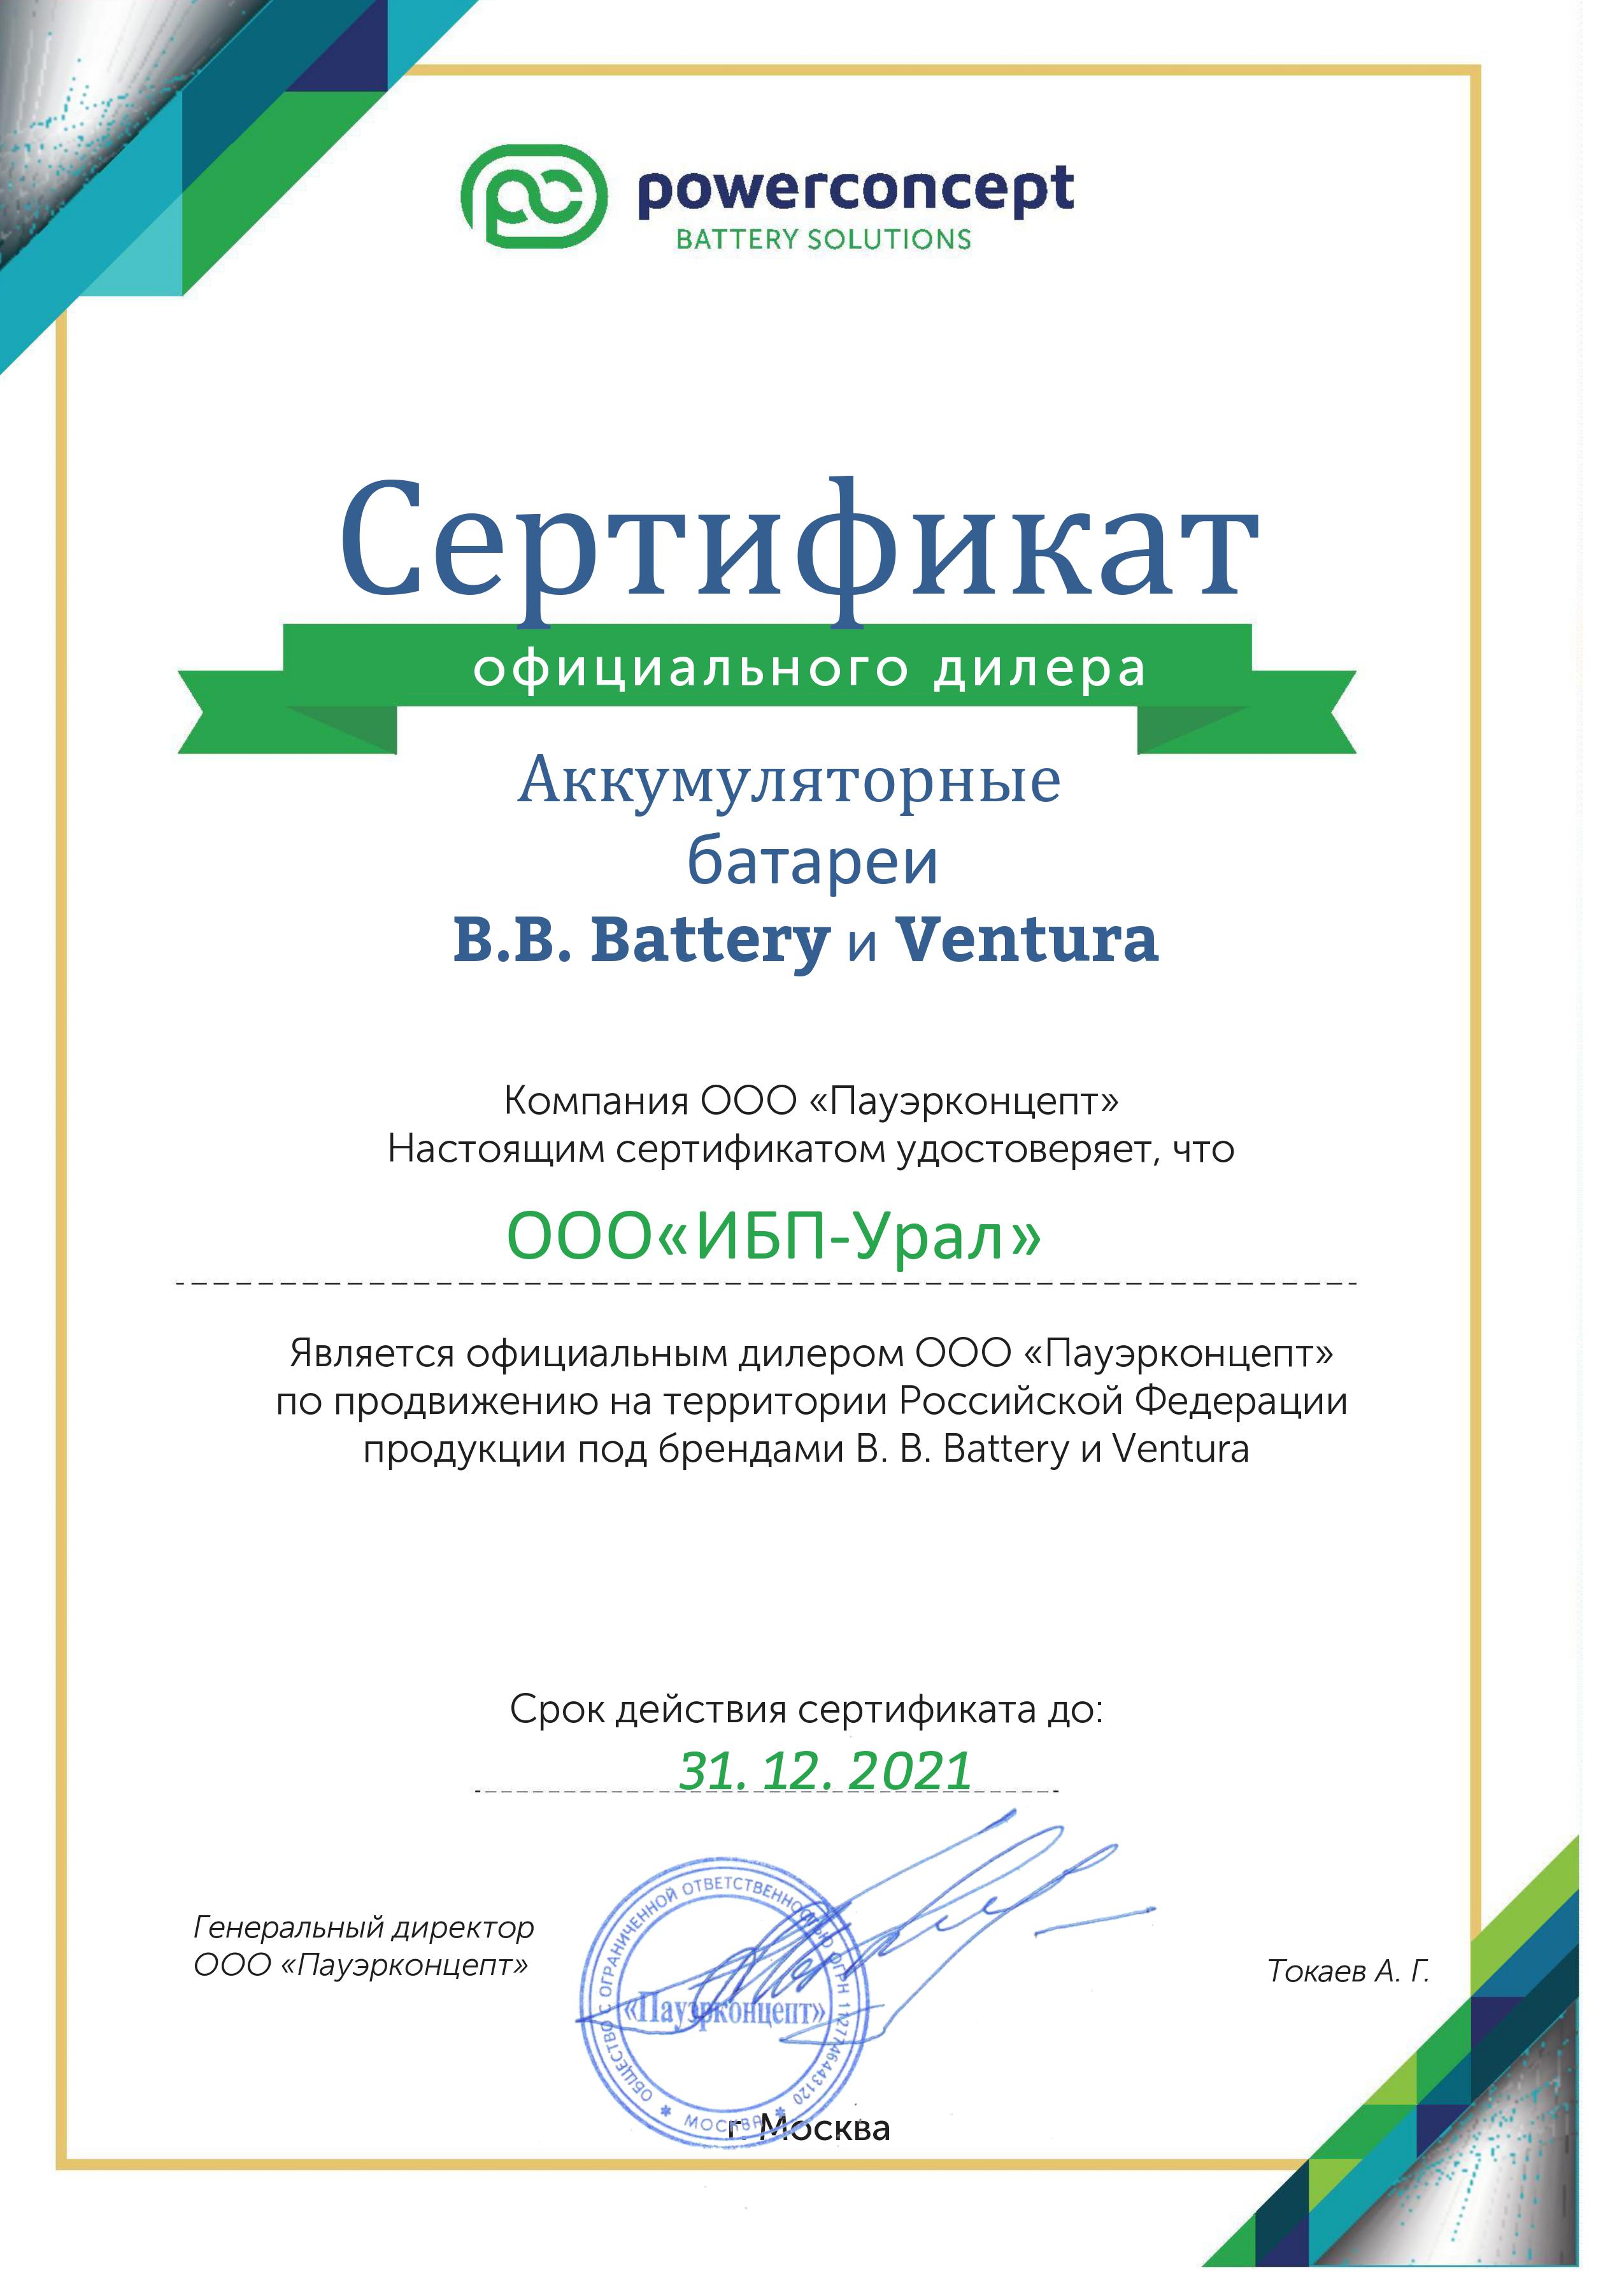 Сертификат PowerConcept